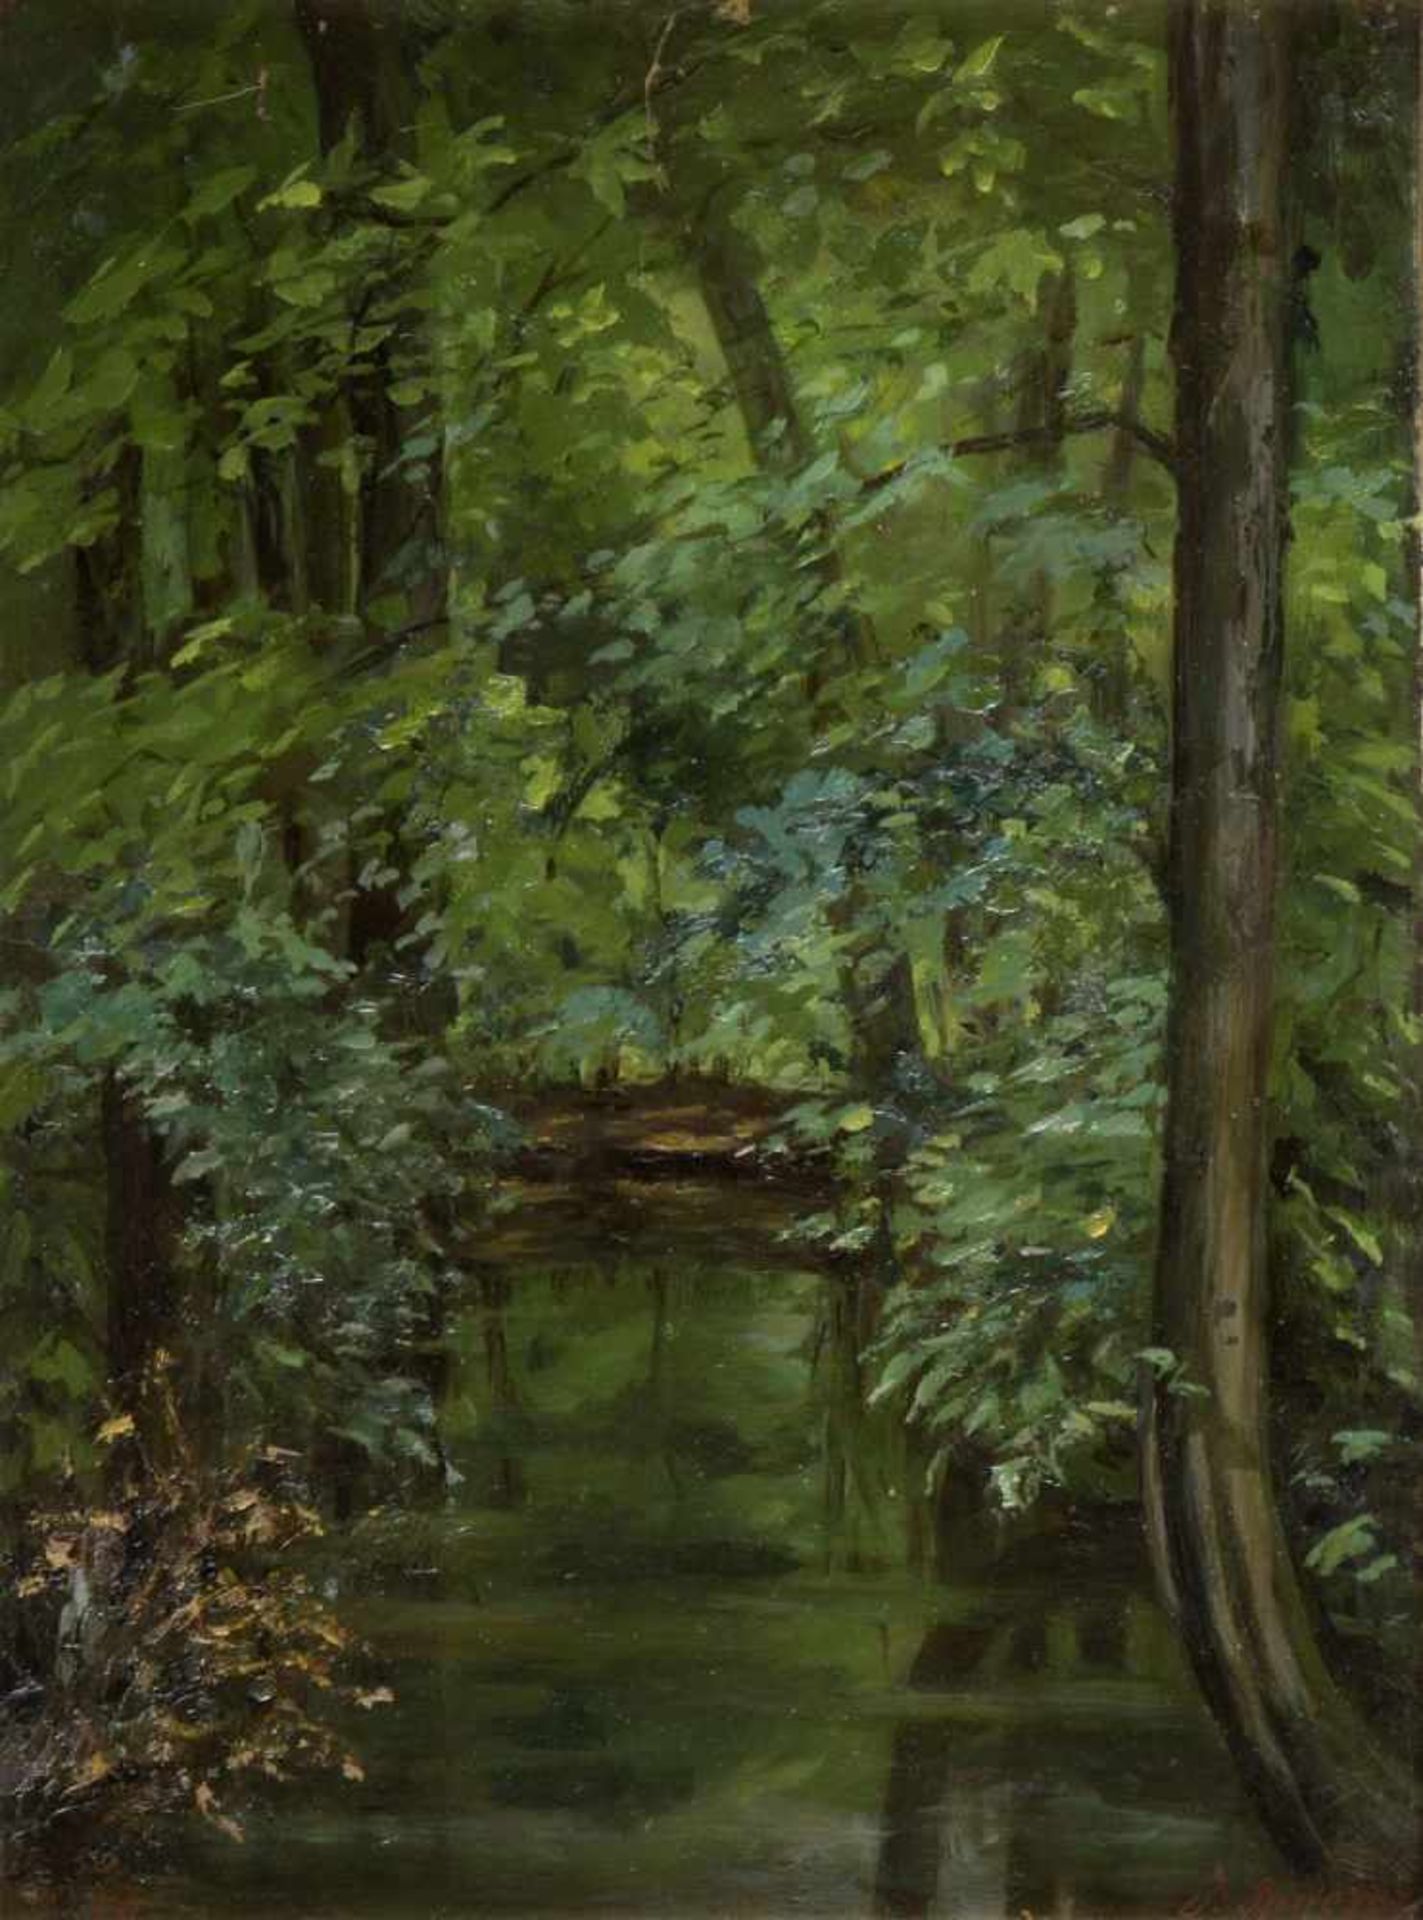 Spoerer, J.Weiher in einem Wald. Öl/Karton. Sign. und dat. (18)96. 31,5 x 23,5 cm. Gerahmt.- - -27.